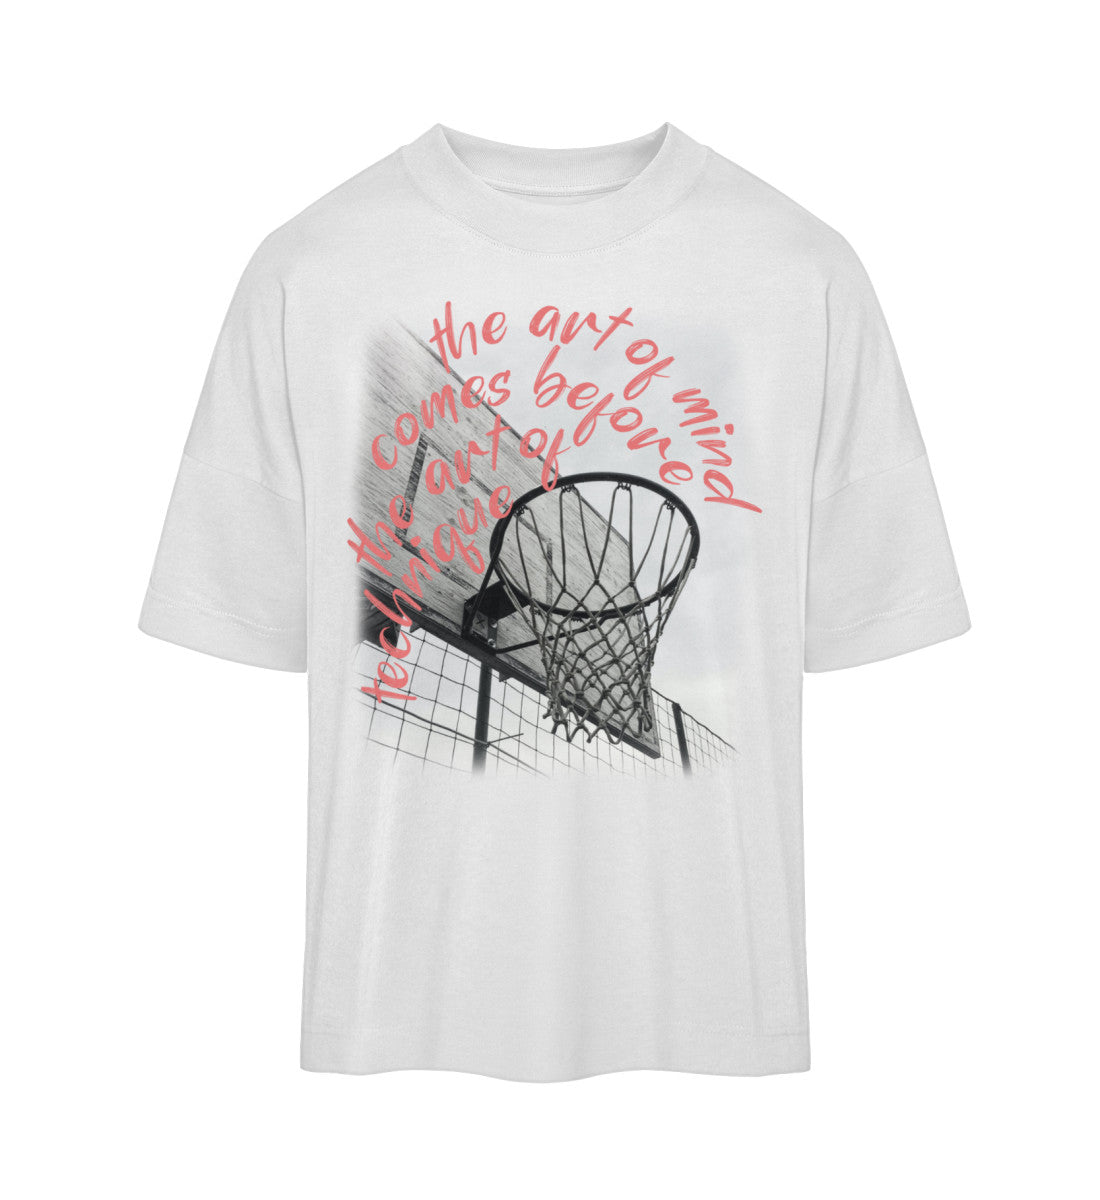 Weißes T-Shirt Unisex Oversize Fit für Frauen und Männer bedruckt mit dem Design der Roger Rockawoo Kollektion Basketball 3x3 Streetball Downtown